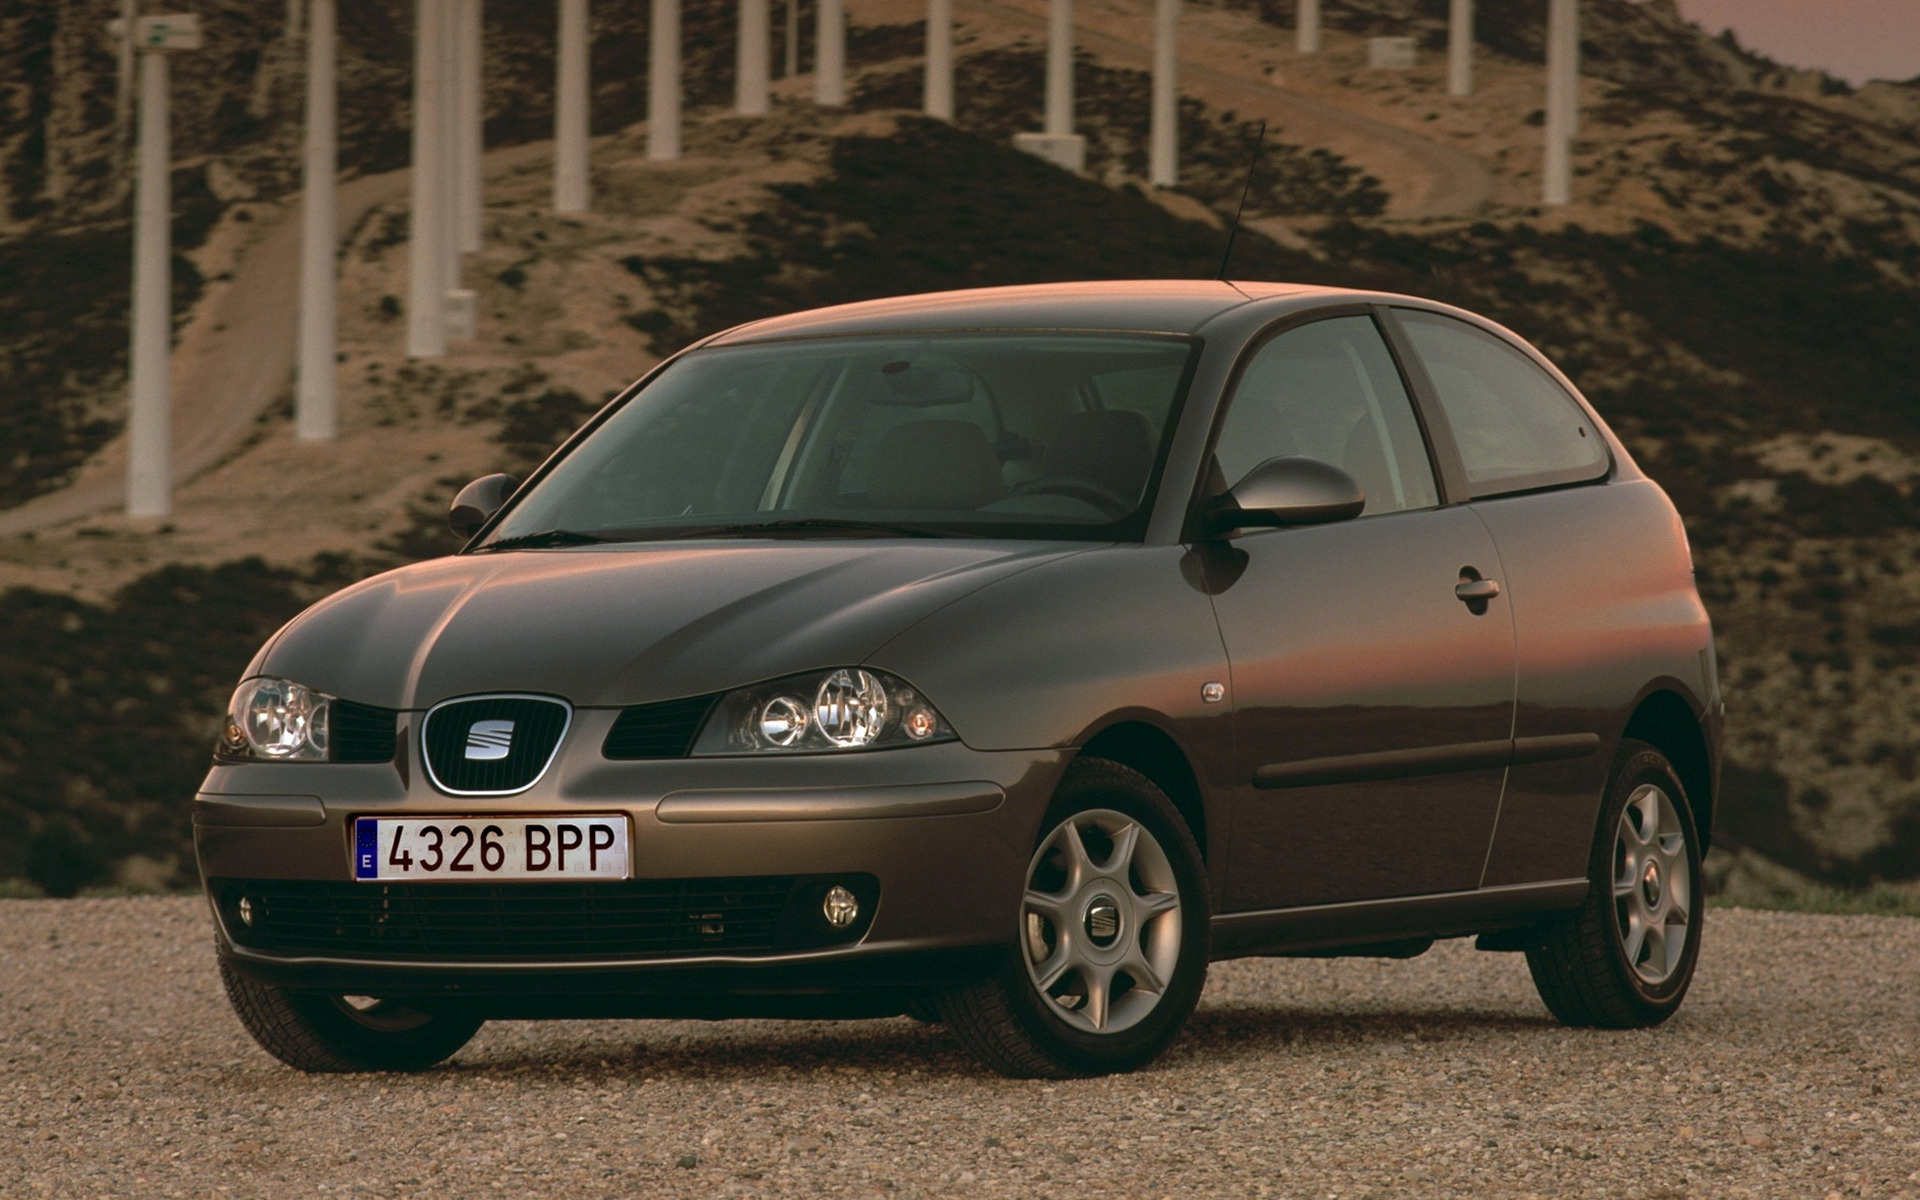 Seat Ibiza, 2002 seat ibiza, hintergrundbilder, car pixel, 1920x1200 HD Desktop